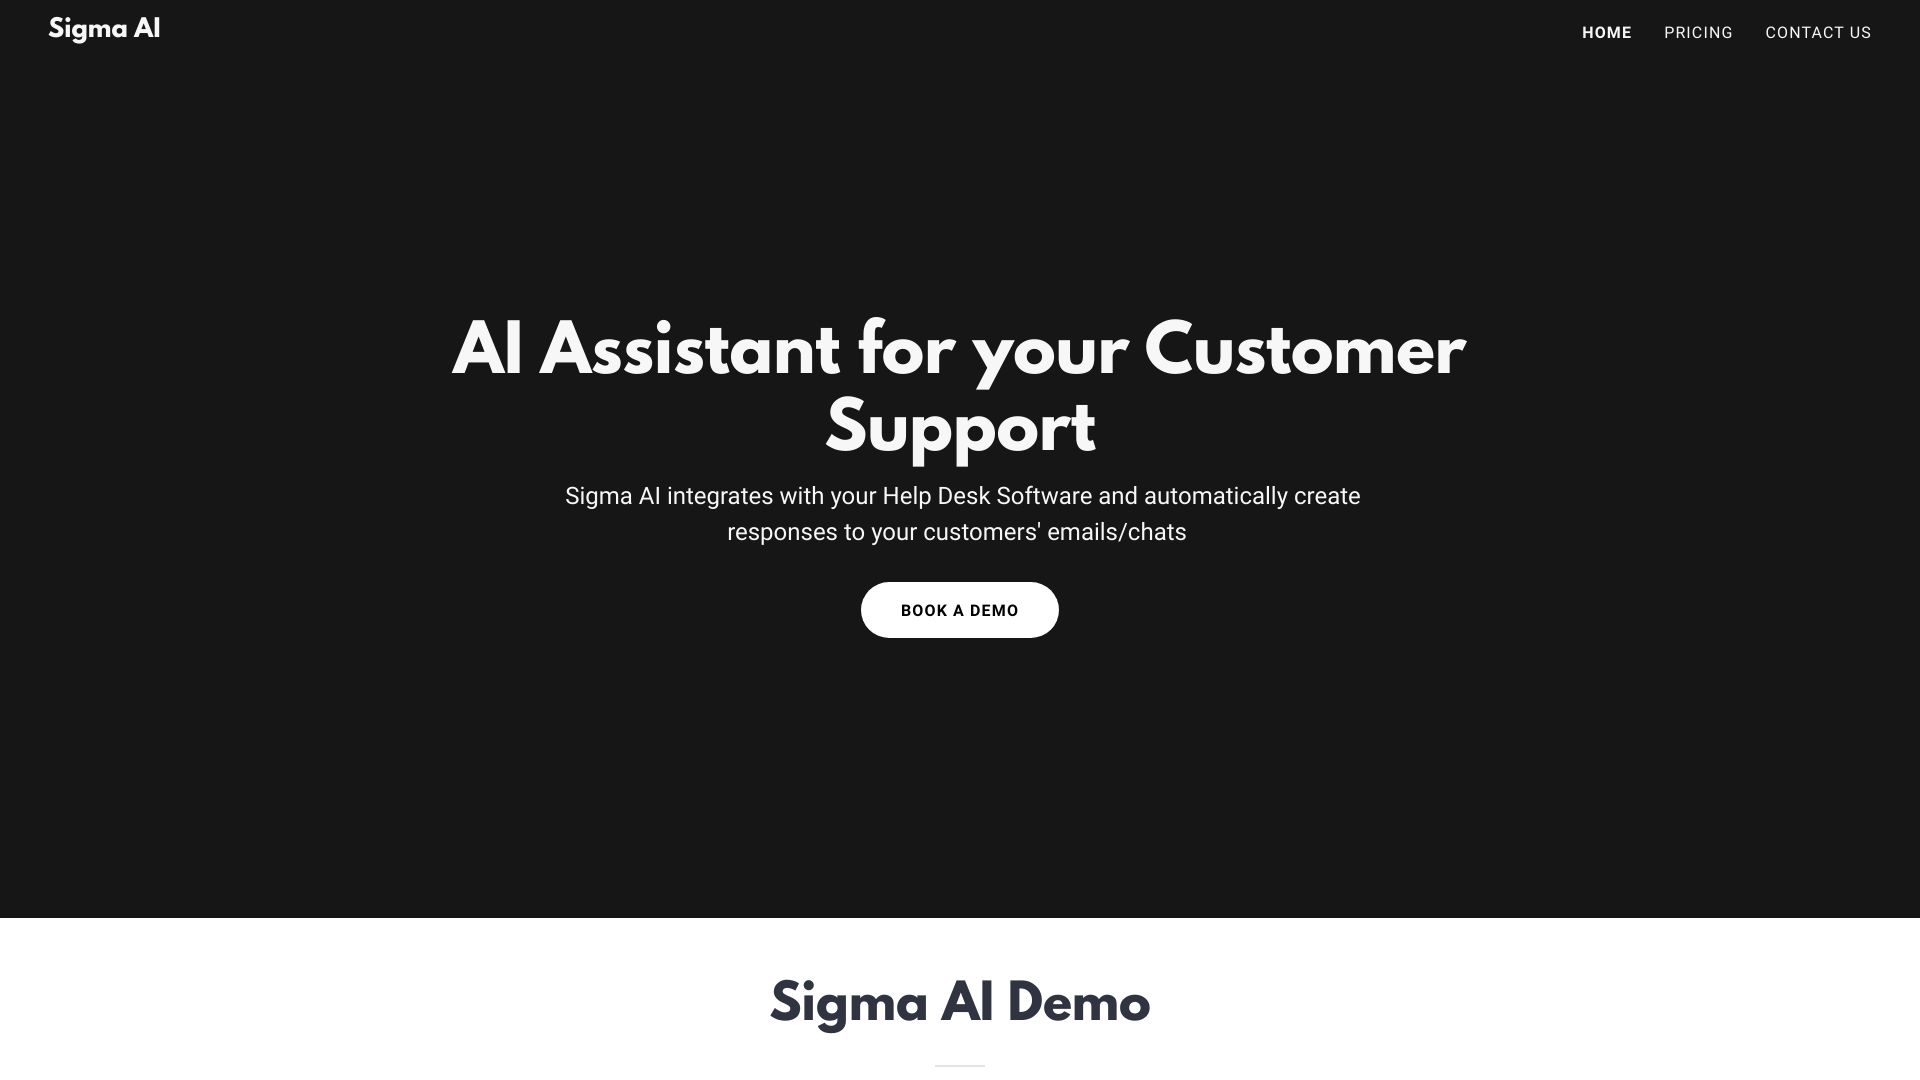 Sigma AI